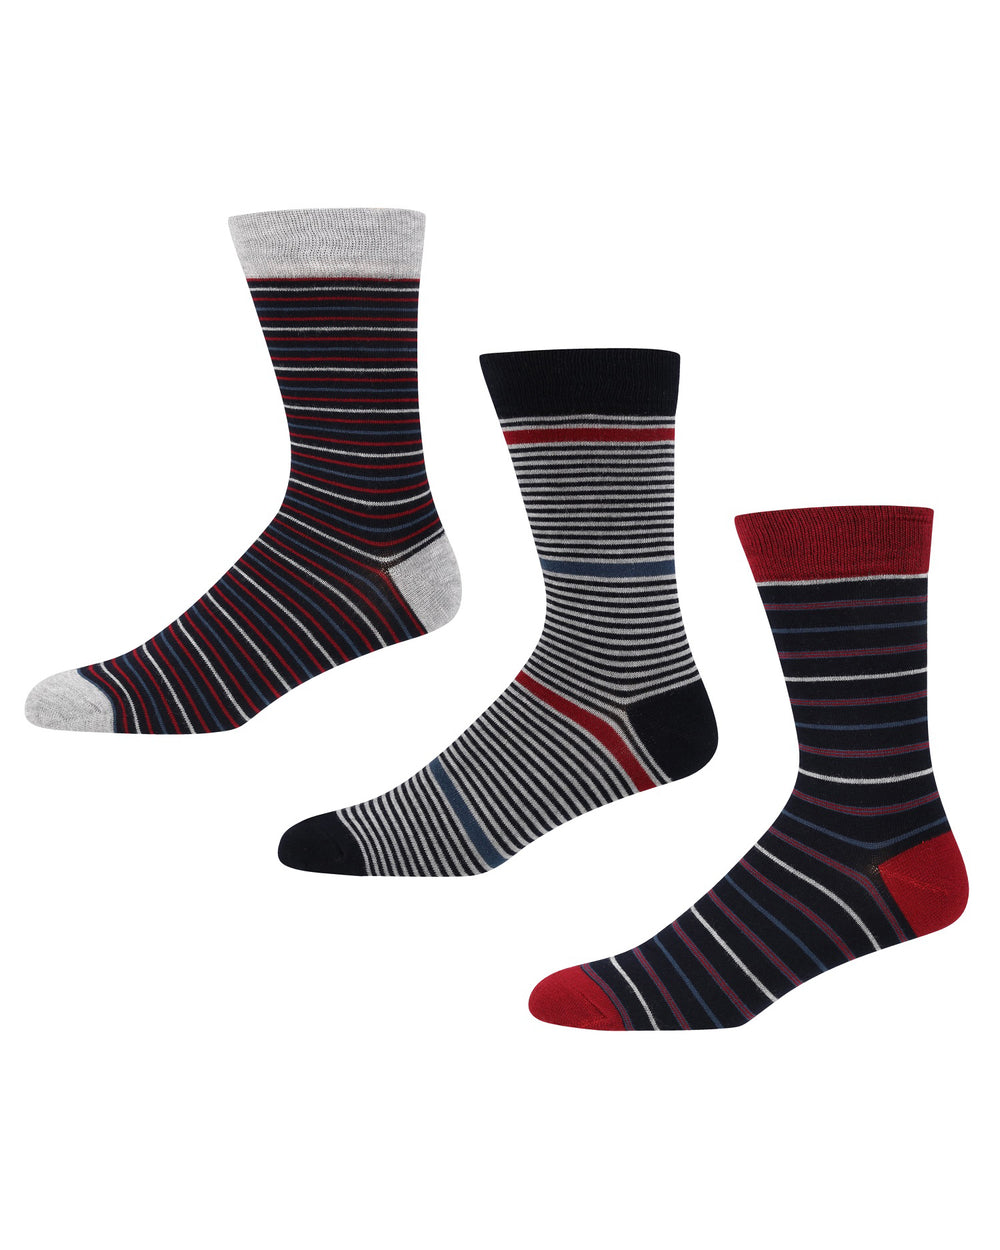 Melair Men's 3-Pack Socks - Navy/Multi Stripes